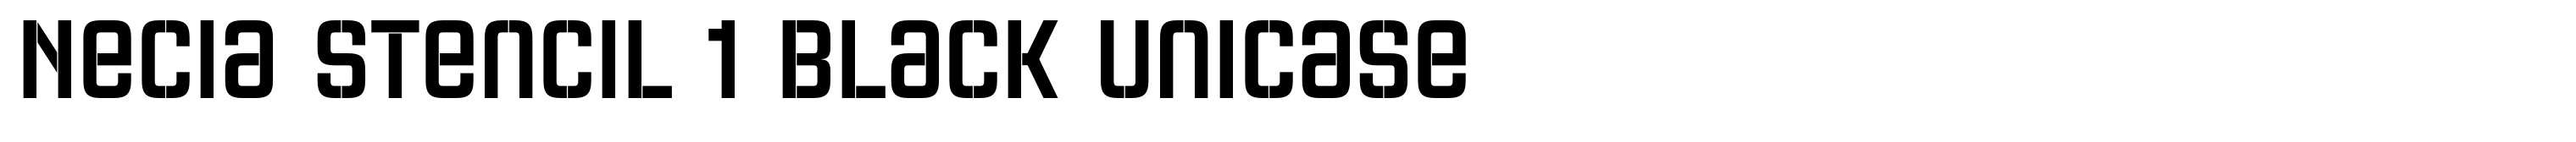 Necia Stencil 1 Black Unicase